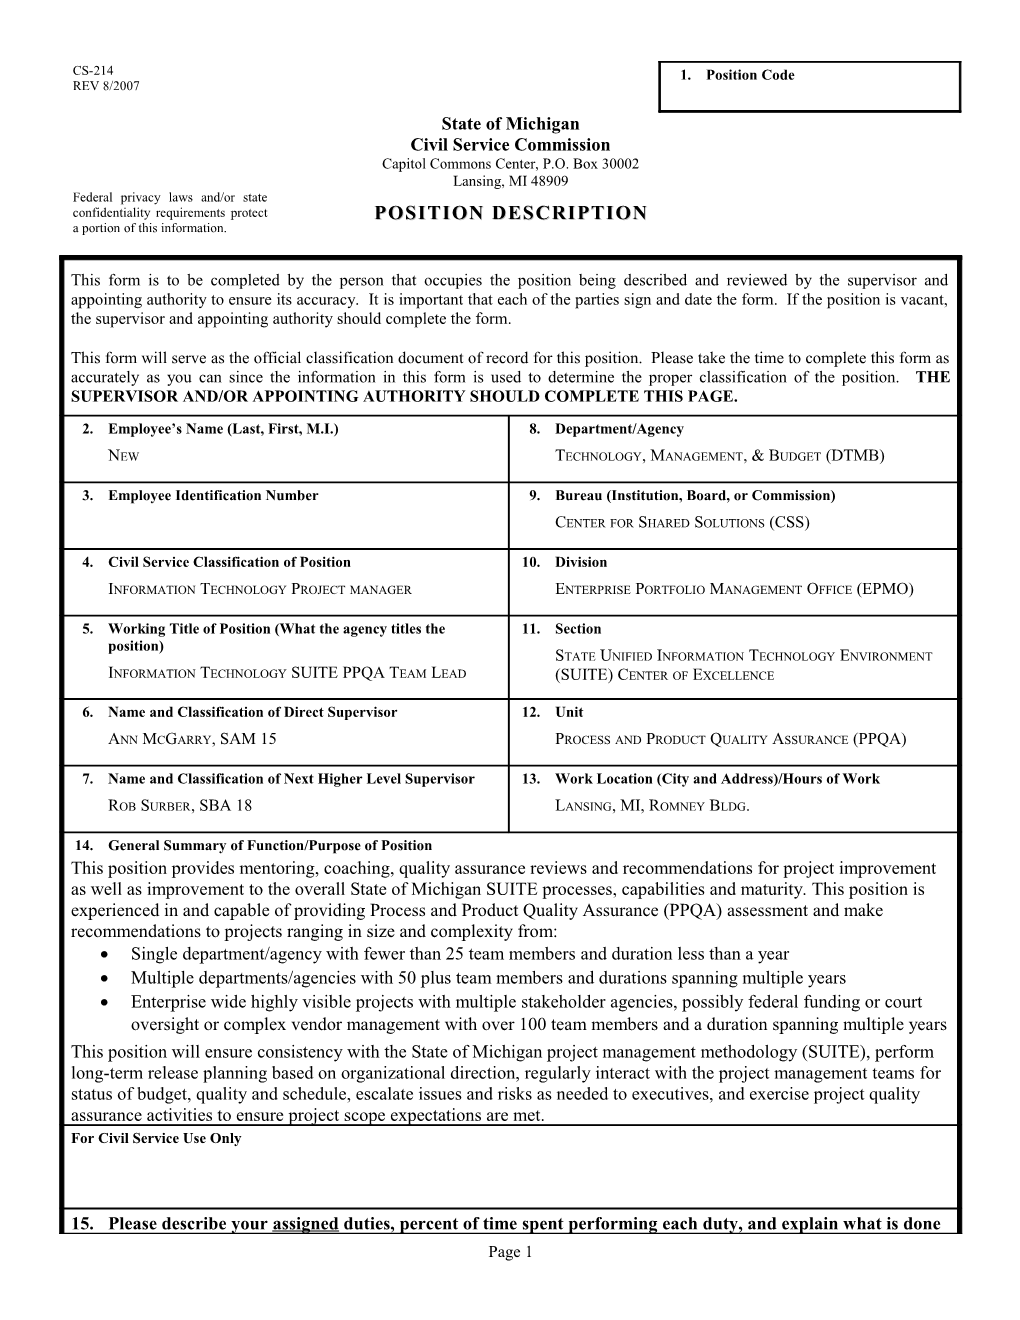 CS-214 Position Description Form s24